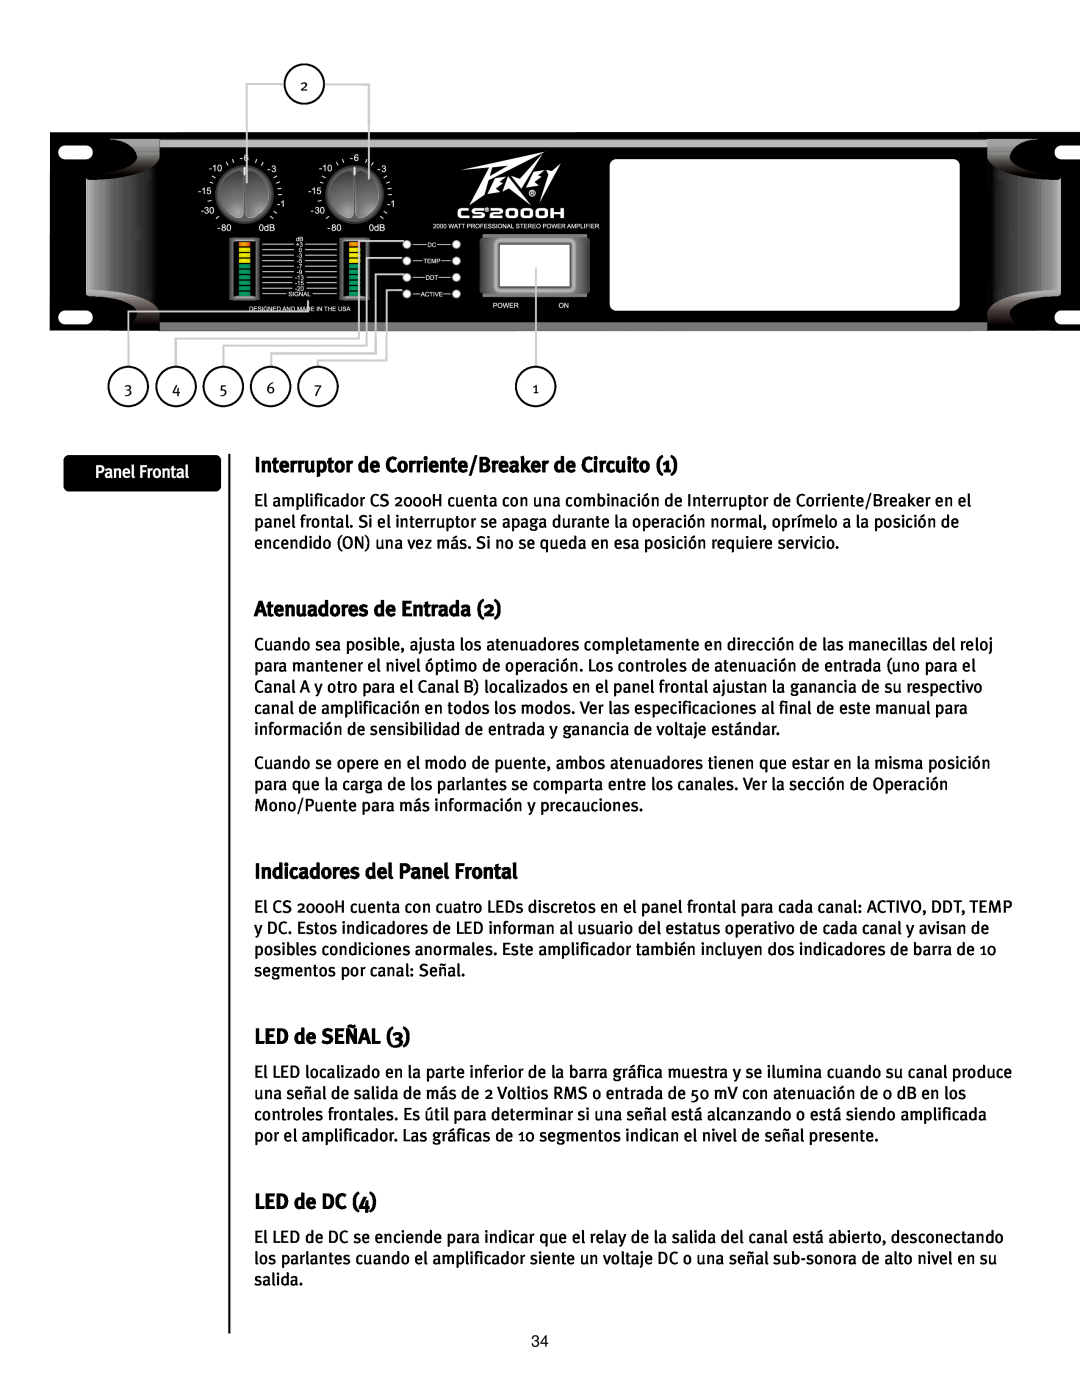 Peavey CS2000H manual Interruptor de Corriente/Breaker de Circuito, Atenuadores de Entrada, Indicadores del Panel Frontal 